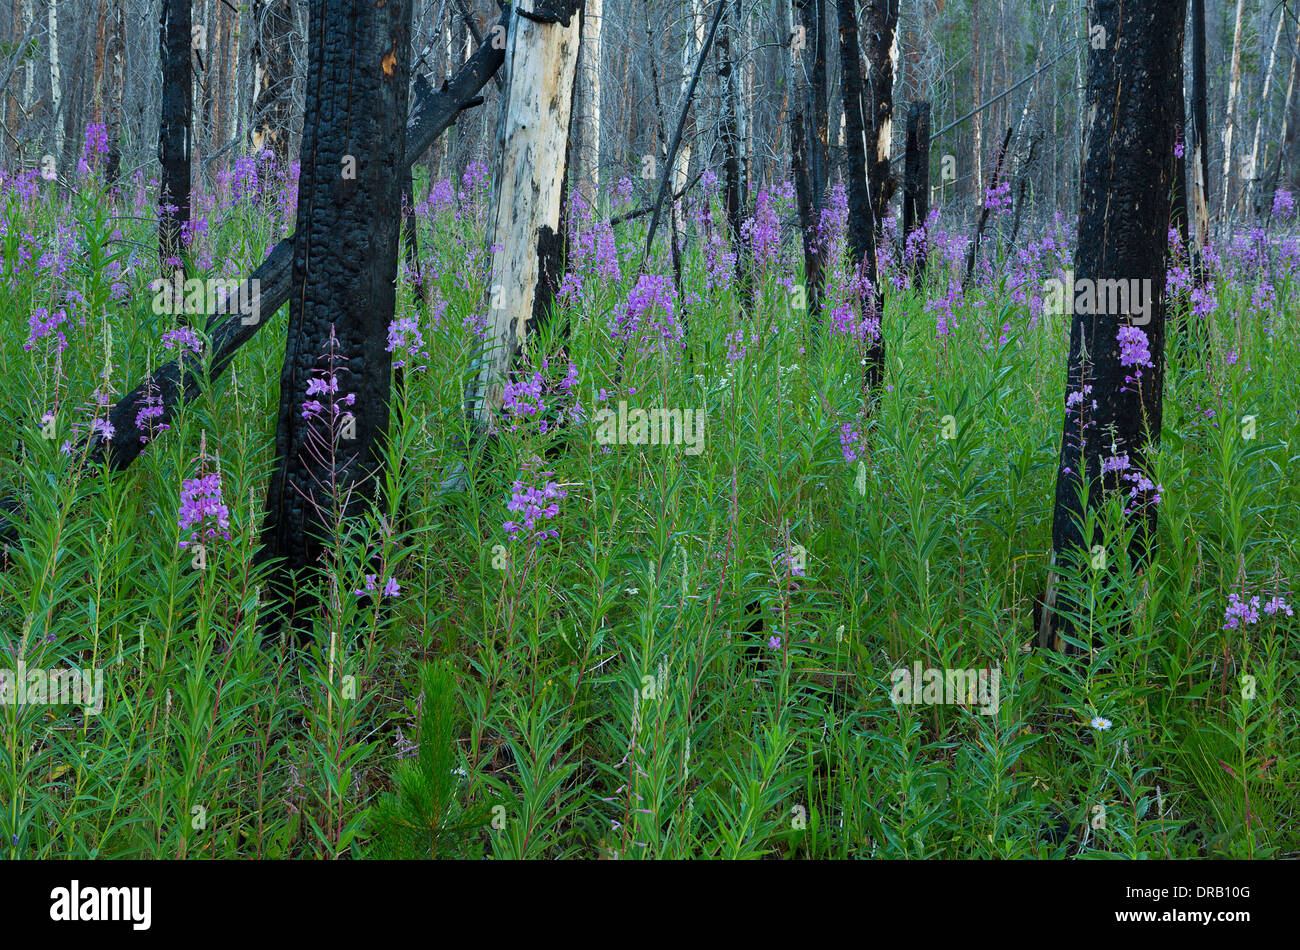 Weidenröschen (Epilobium Angustifolium) in voller Blüte in einem Lodgepole Pine Wald brennen Bereich der Bob Marshall Wilderness, Montana. USA Stockfoto